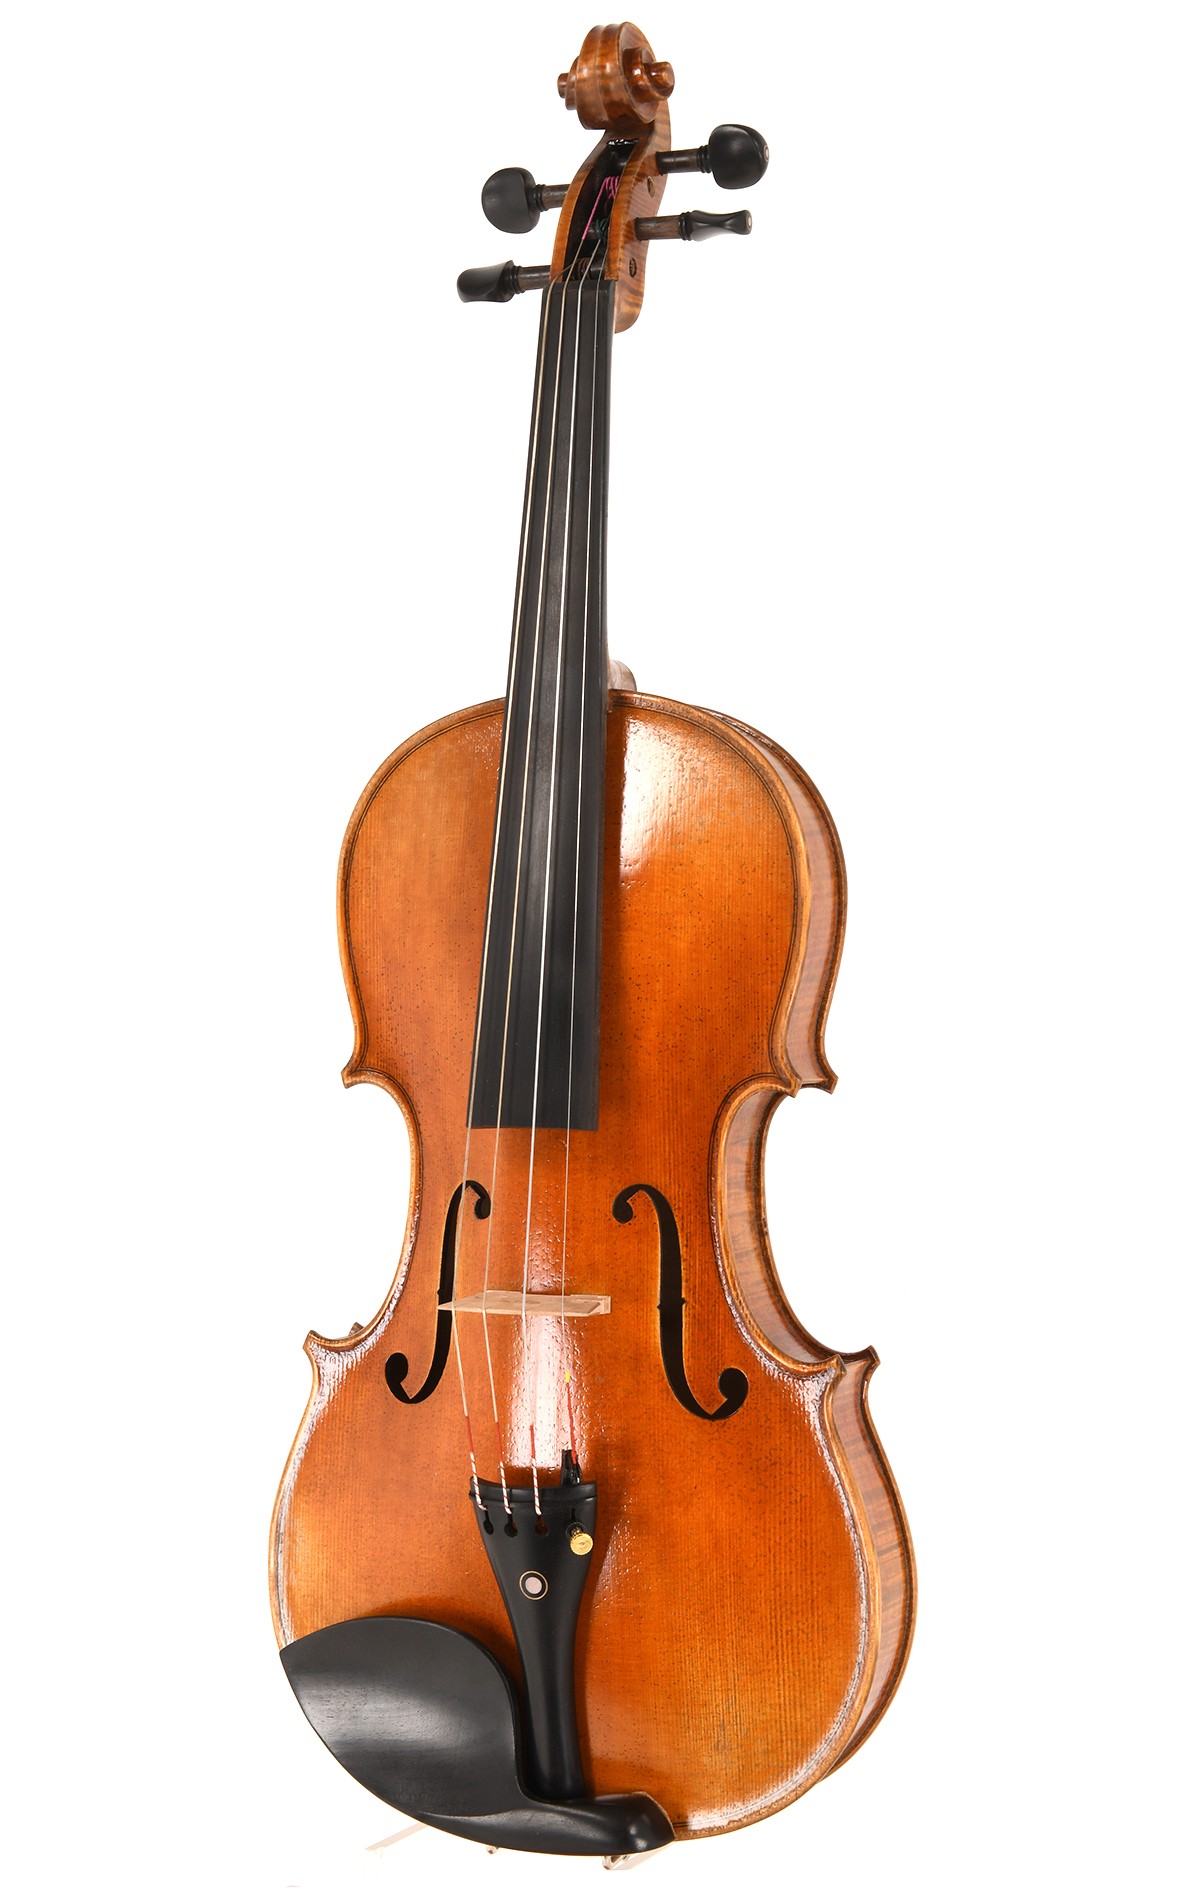 Opus 11 violin